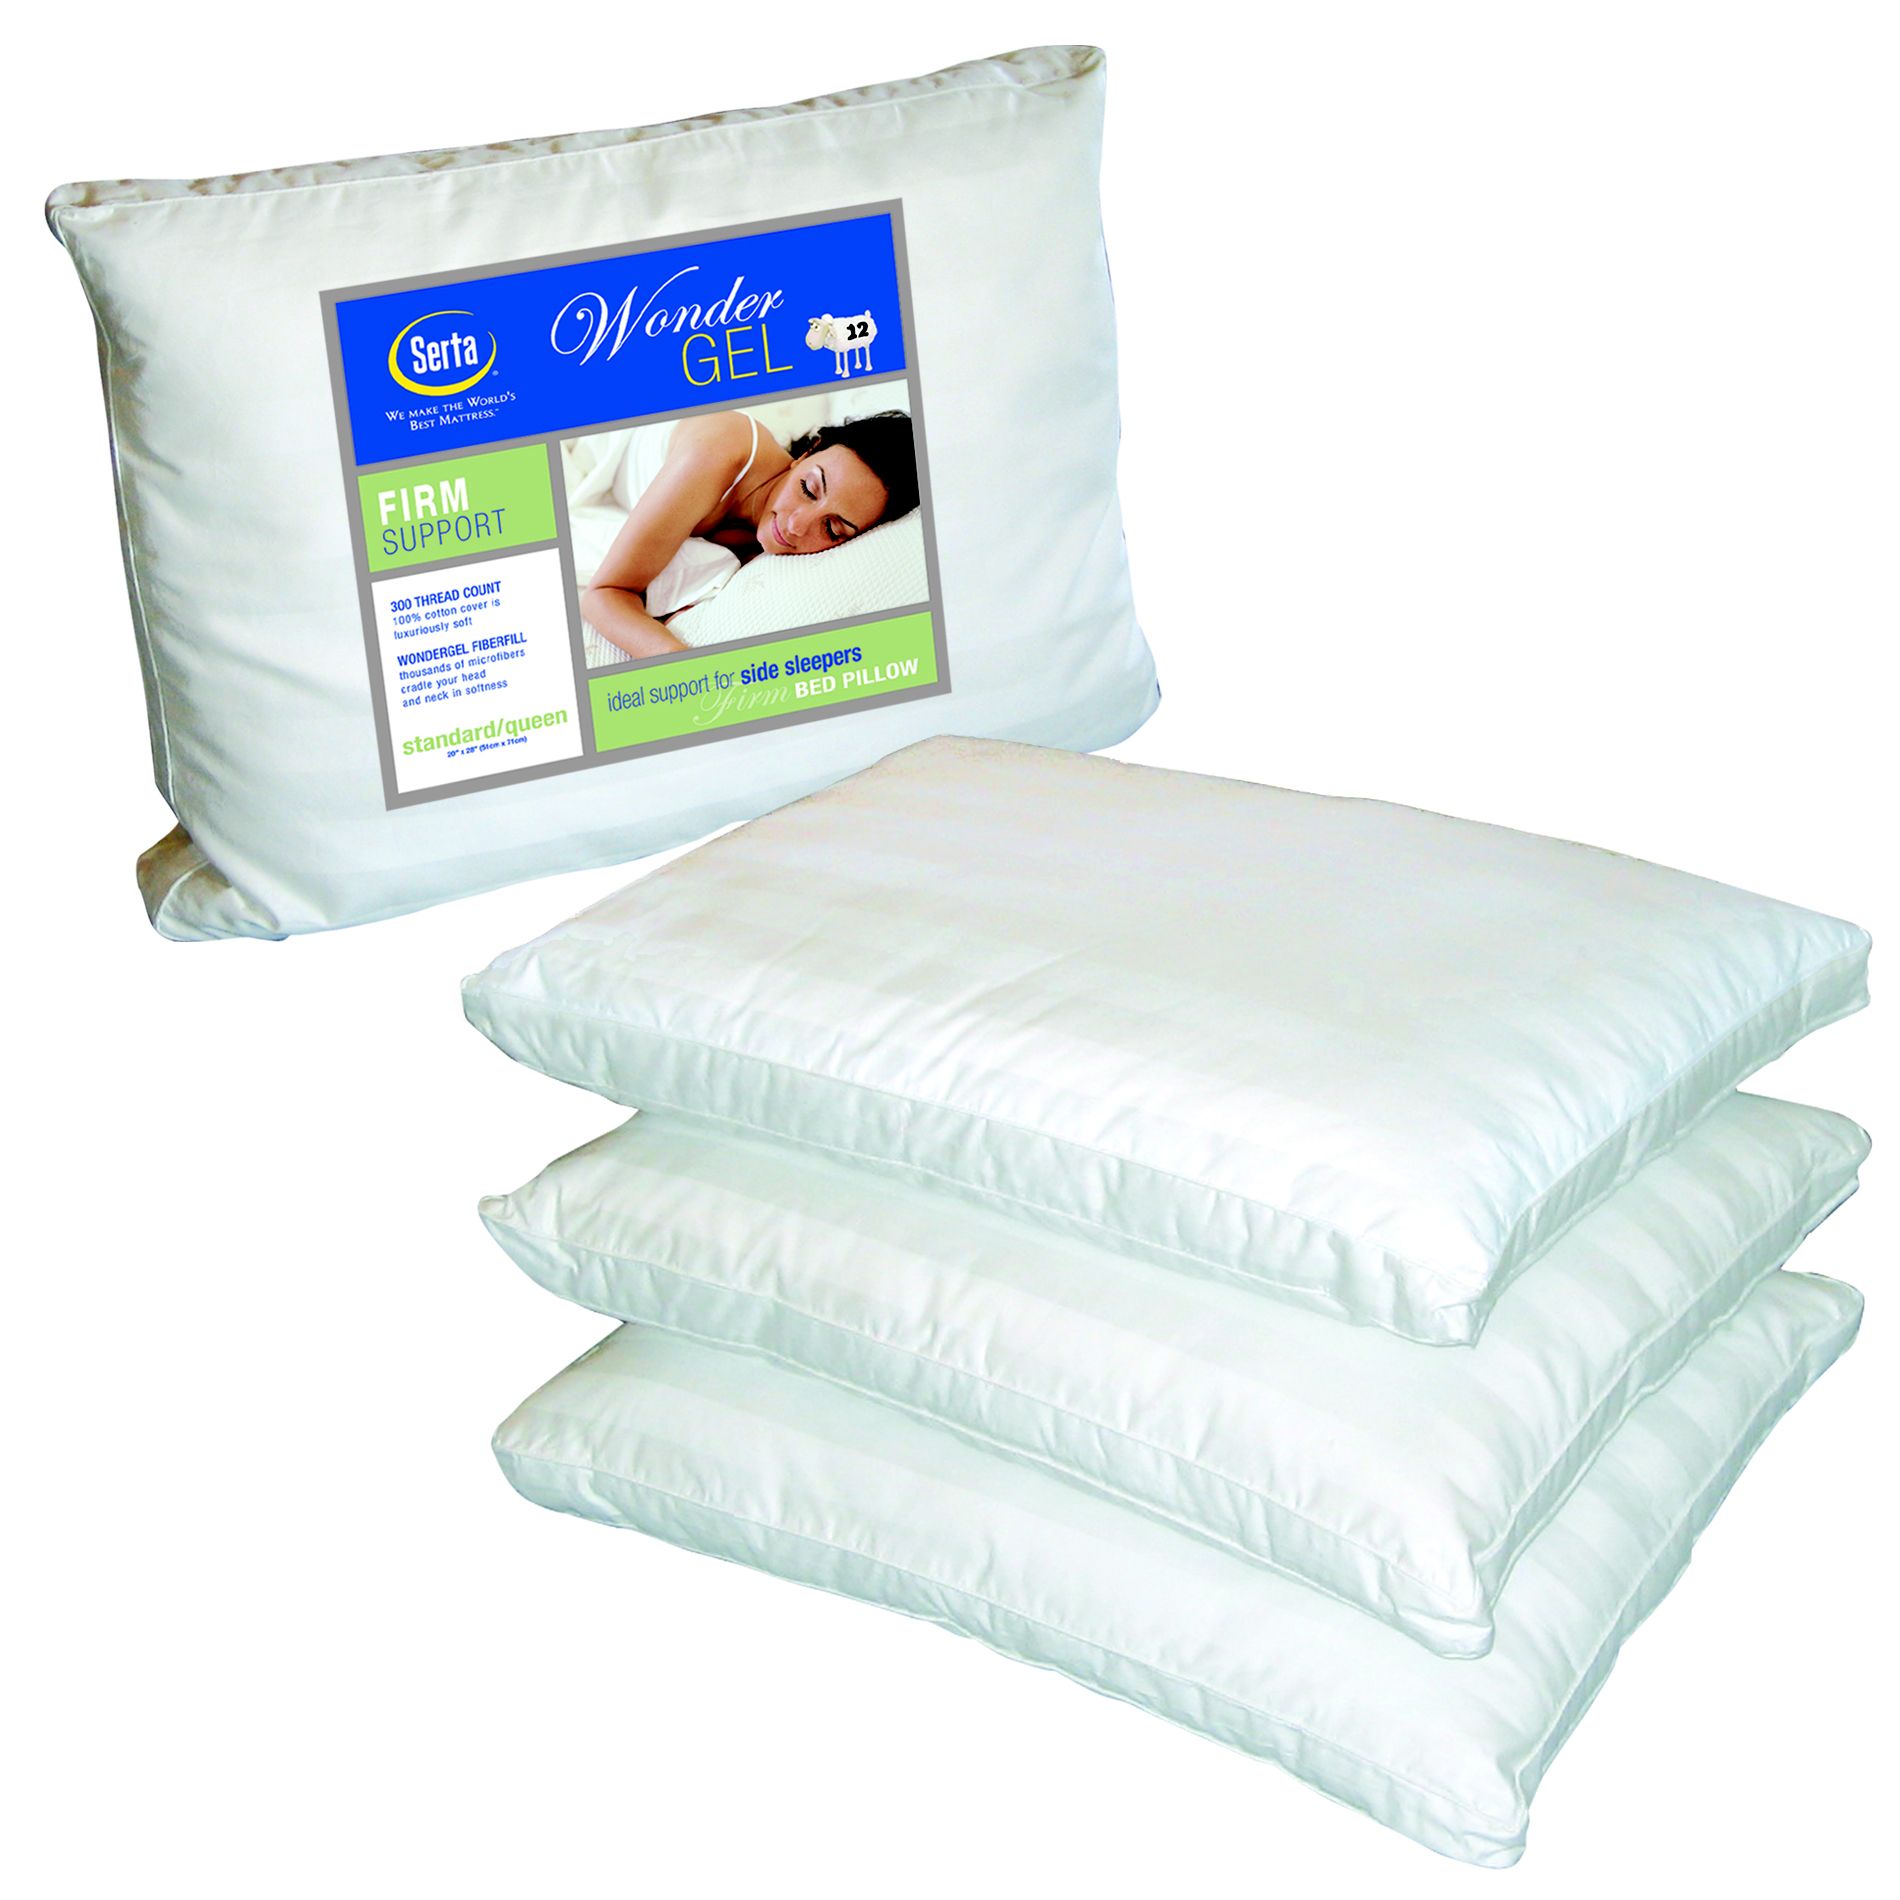 Serta Standard Gel Pillow - Firm